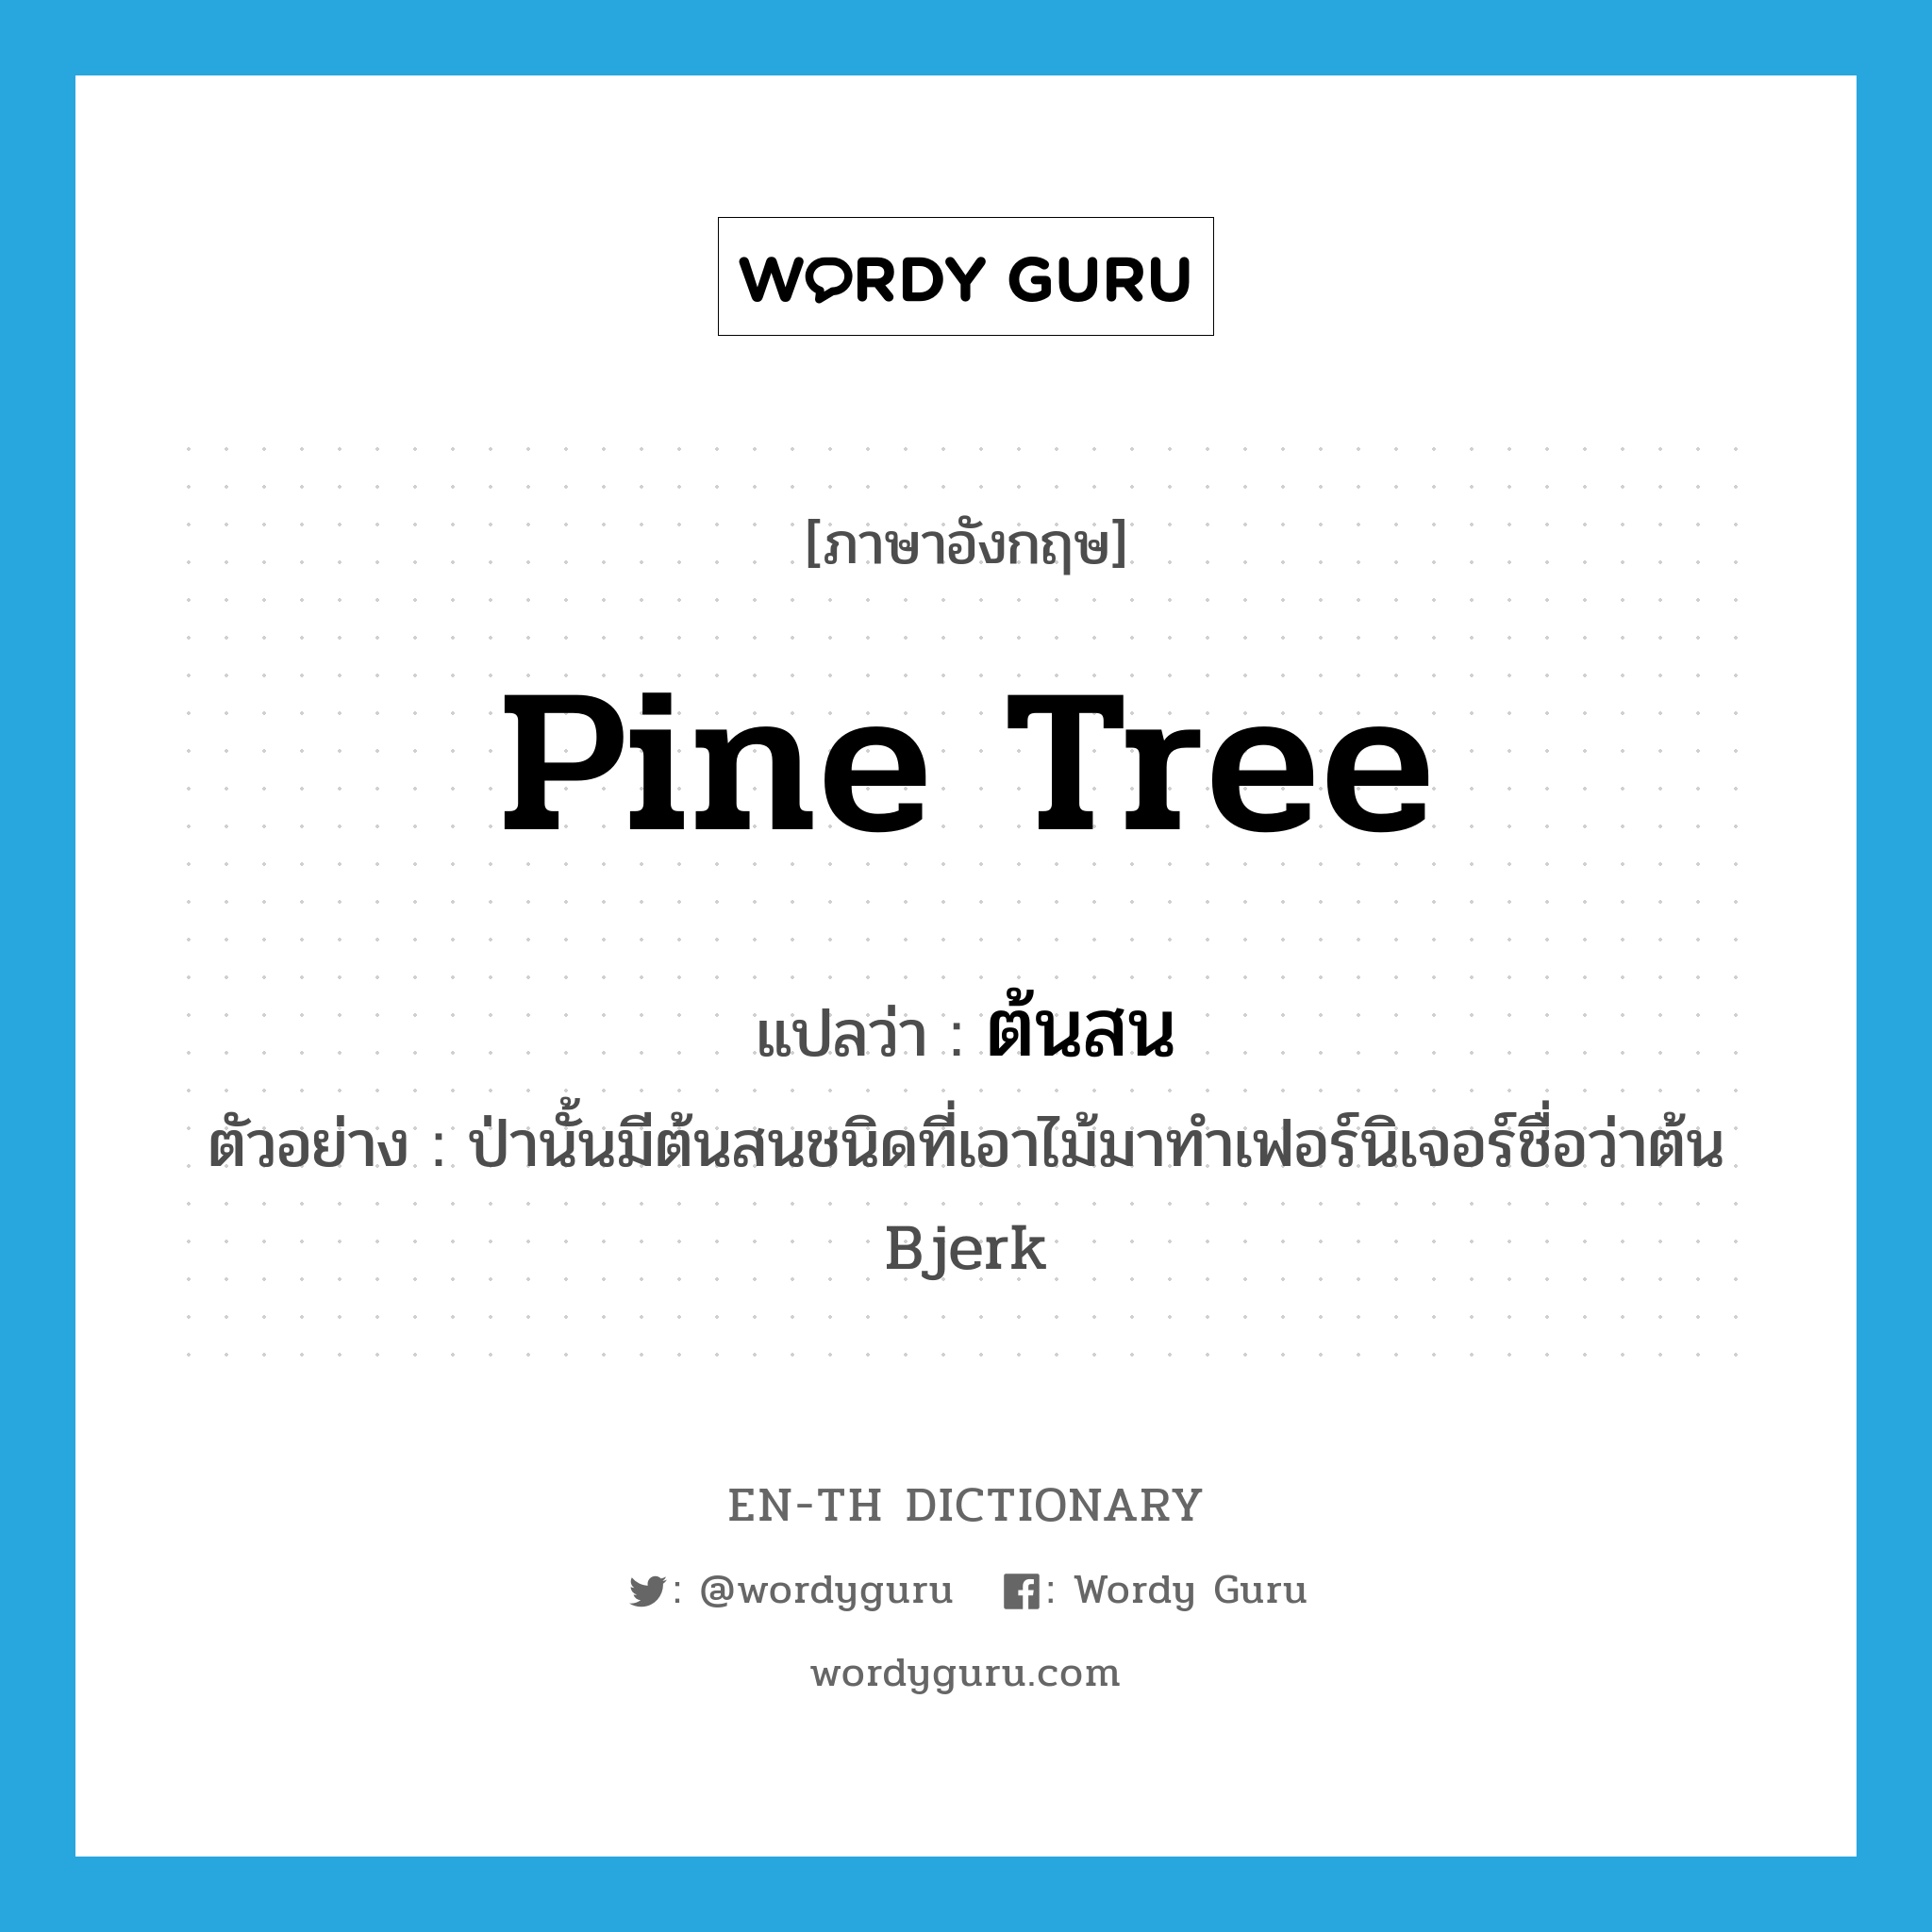 pine tree แปลว่า?, คำศัพท์ภาษาอังกฤษ pine tree แปลว่า ต้นสน ประเภท N ตัวอย่าง ป่านั้นมีต้นสนชนิดที่เอาไม้มาทำเฟอร์นิเจอร์ชื่อว่าต้น Bjerk หมวด N